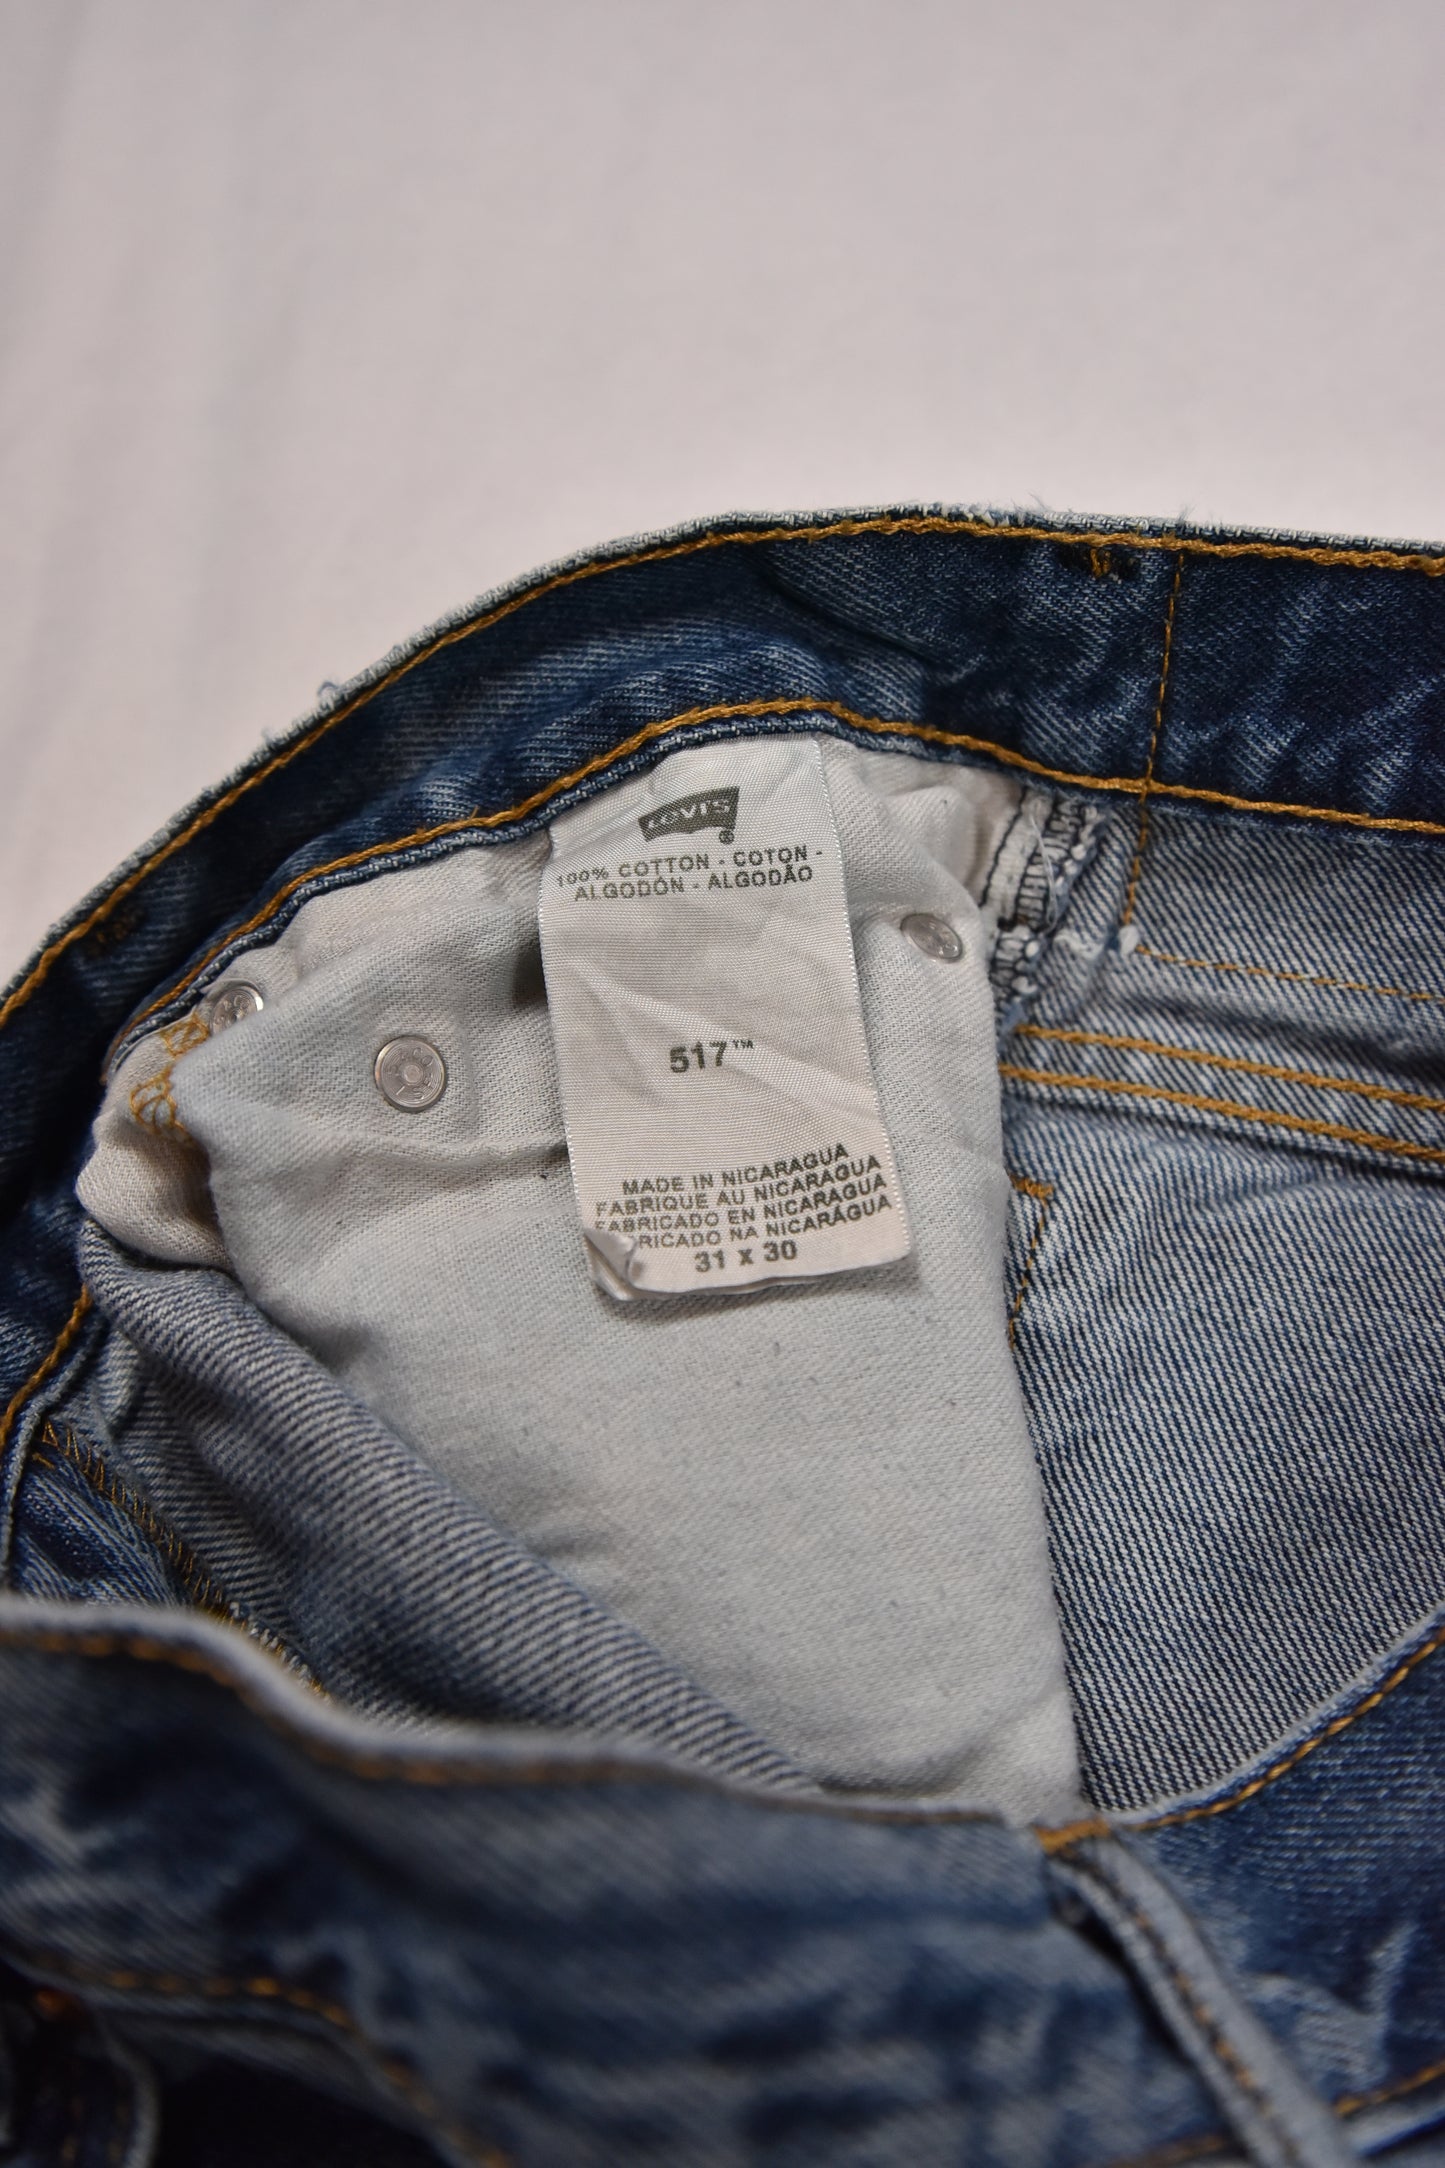 Levi's 517 Jeans Vintage / 31x30